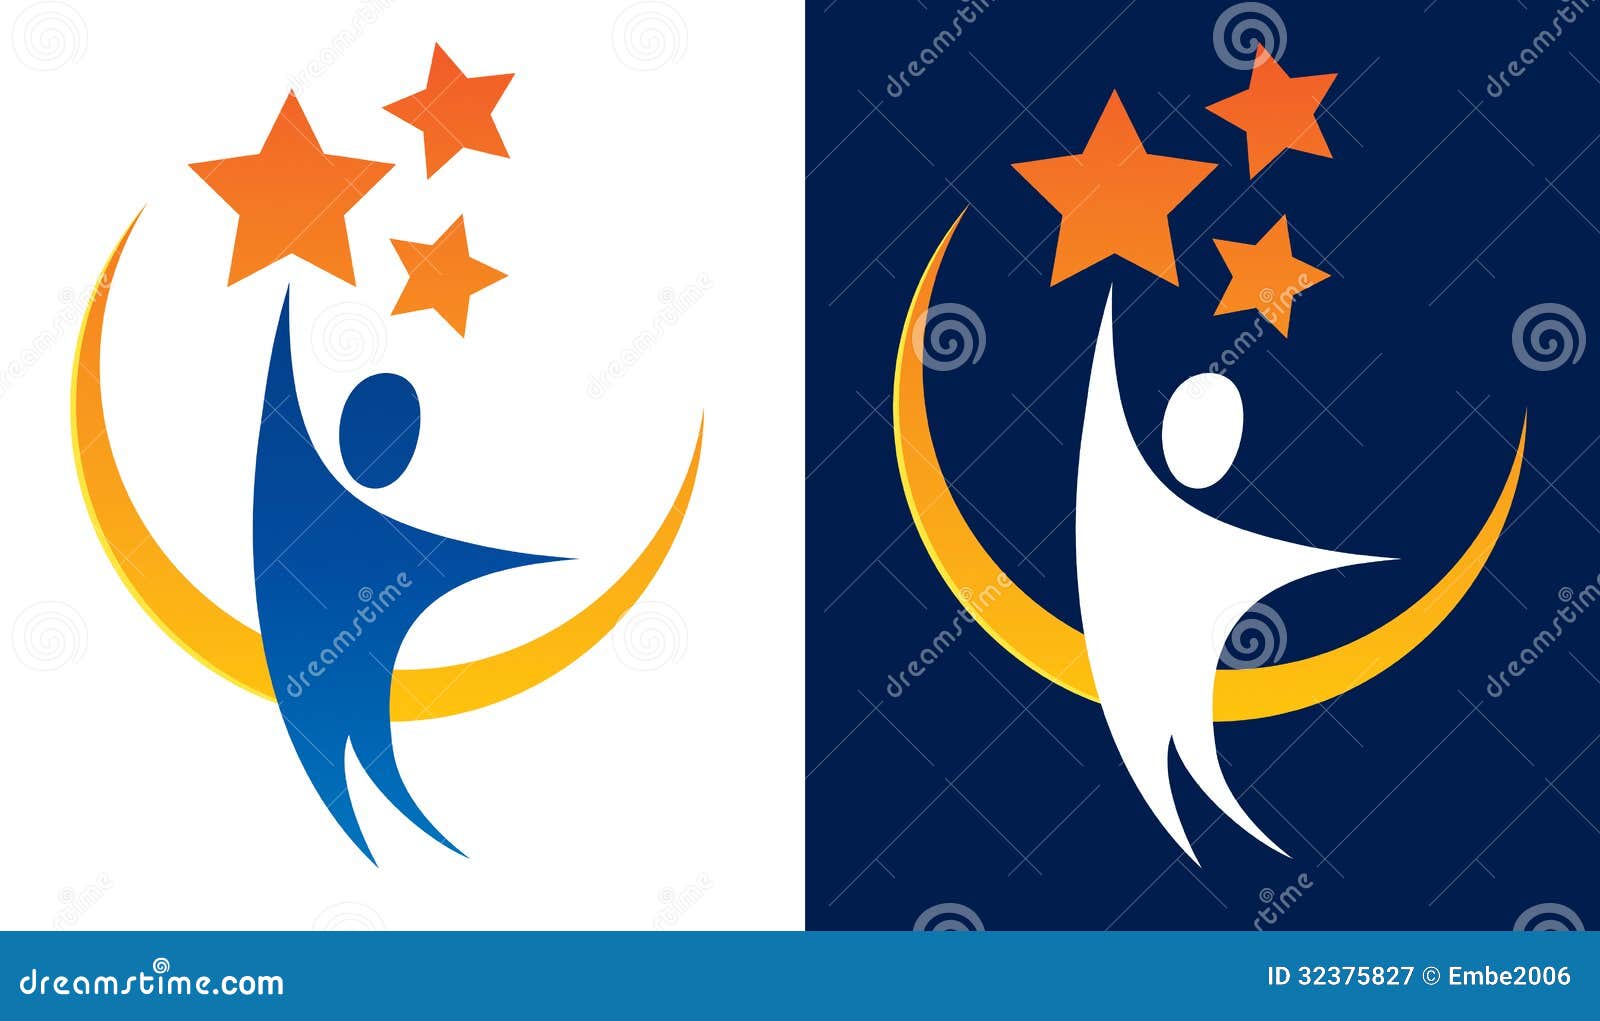 reaching for stars logo